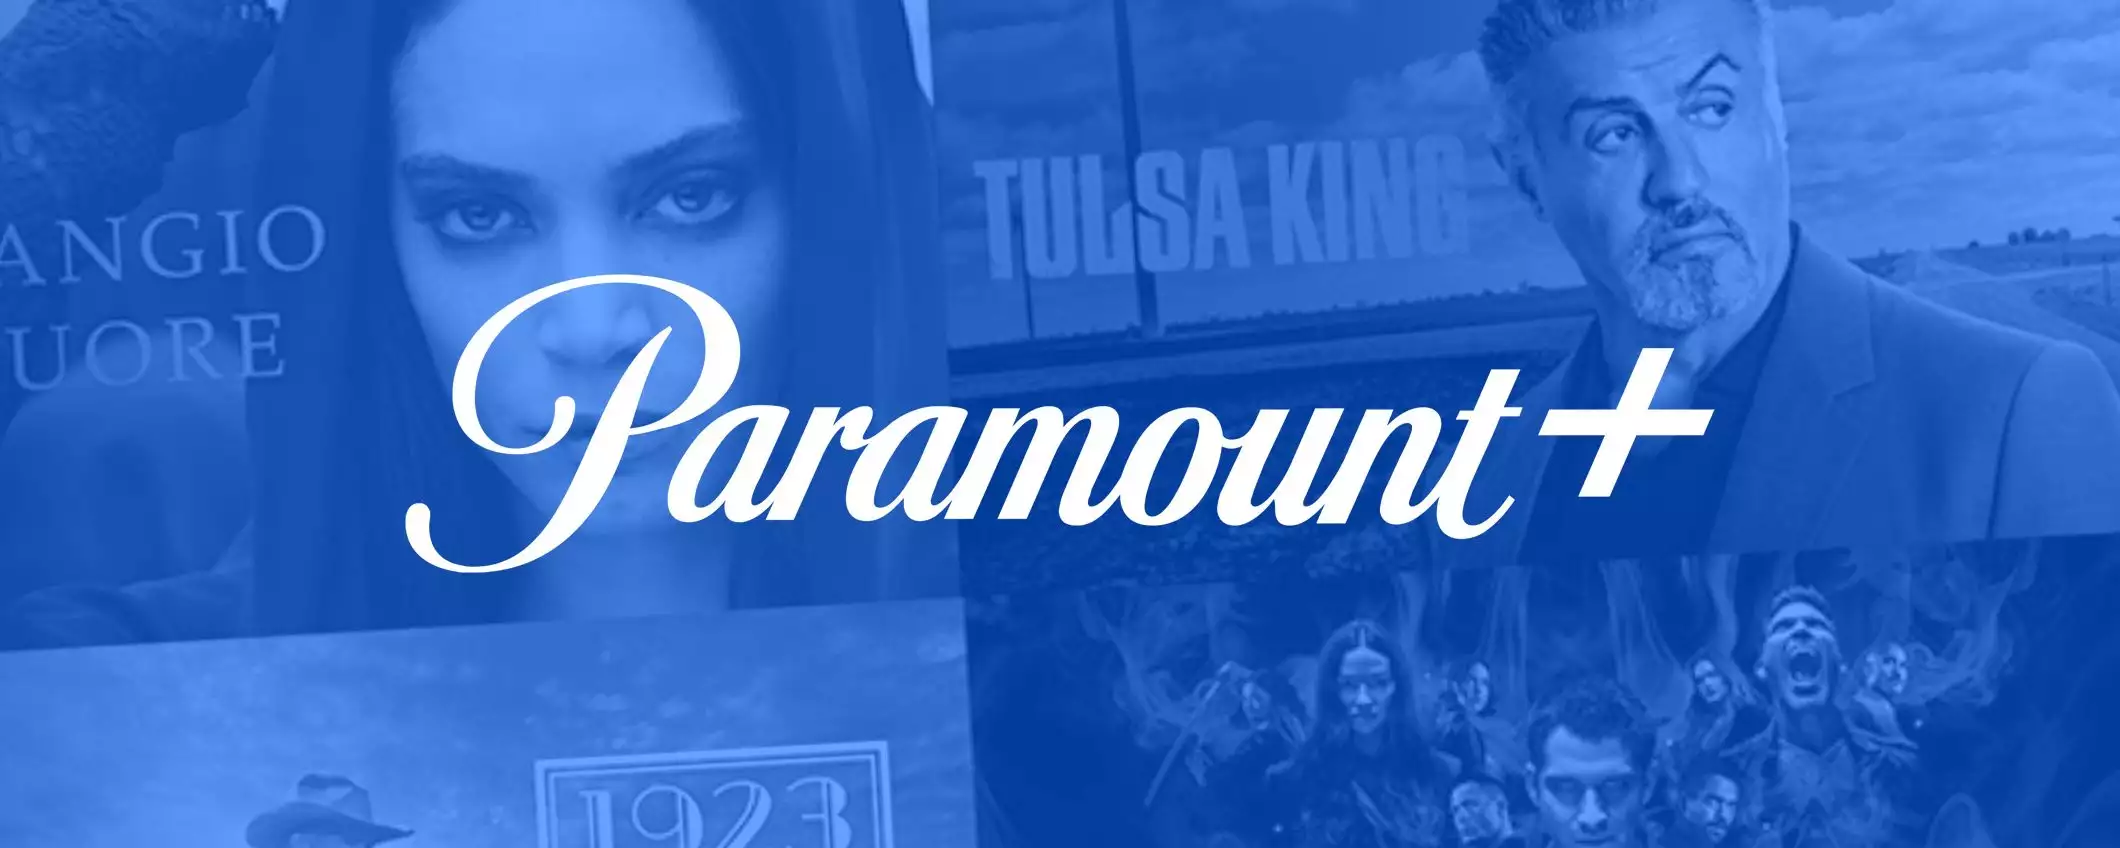 Paramount+, tre mesi a metà prezzo con Amazon Prime